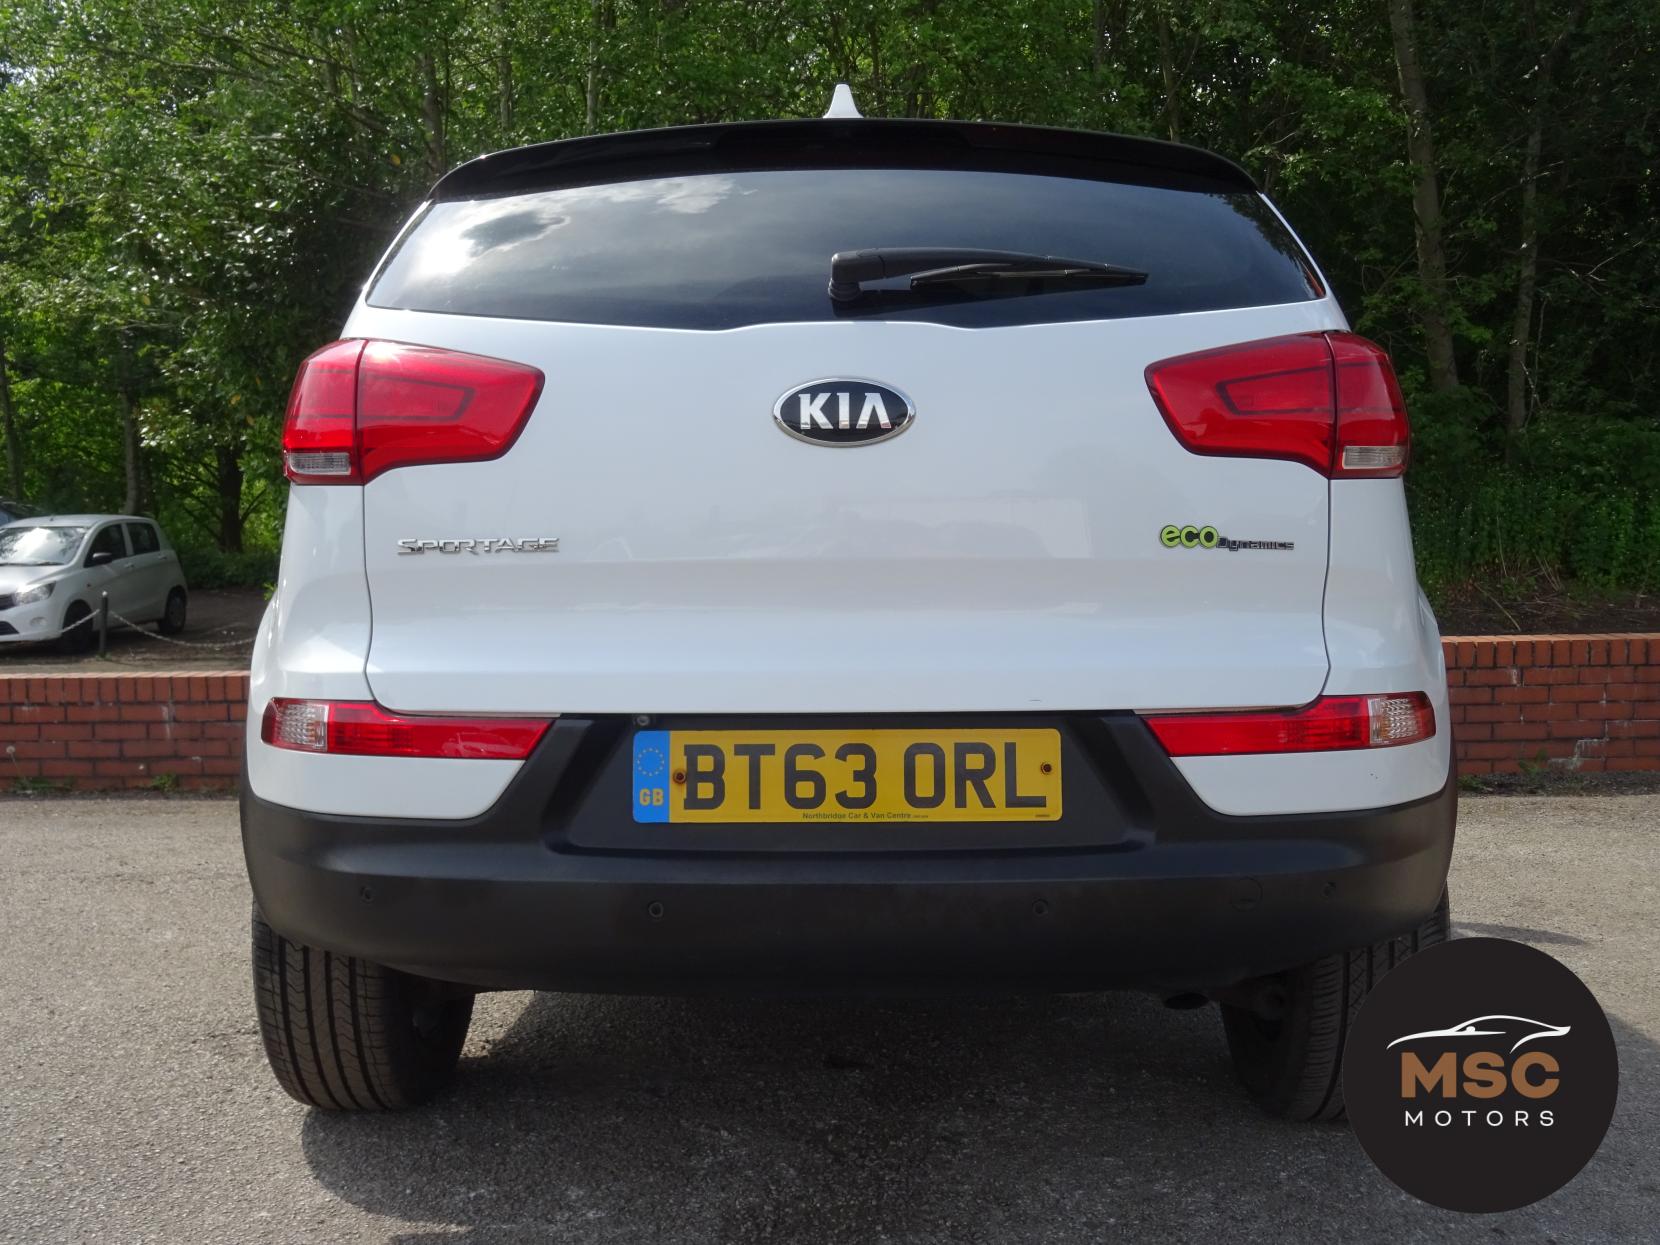 Kia Sportage 1.7 CRDi EcoDynamics 3 SUV 5dr Diesel Manual 2WD Euro 5 (s/s) (114 bhp)